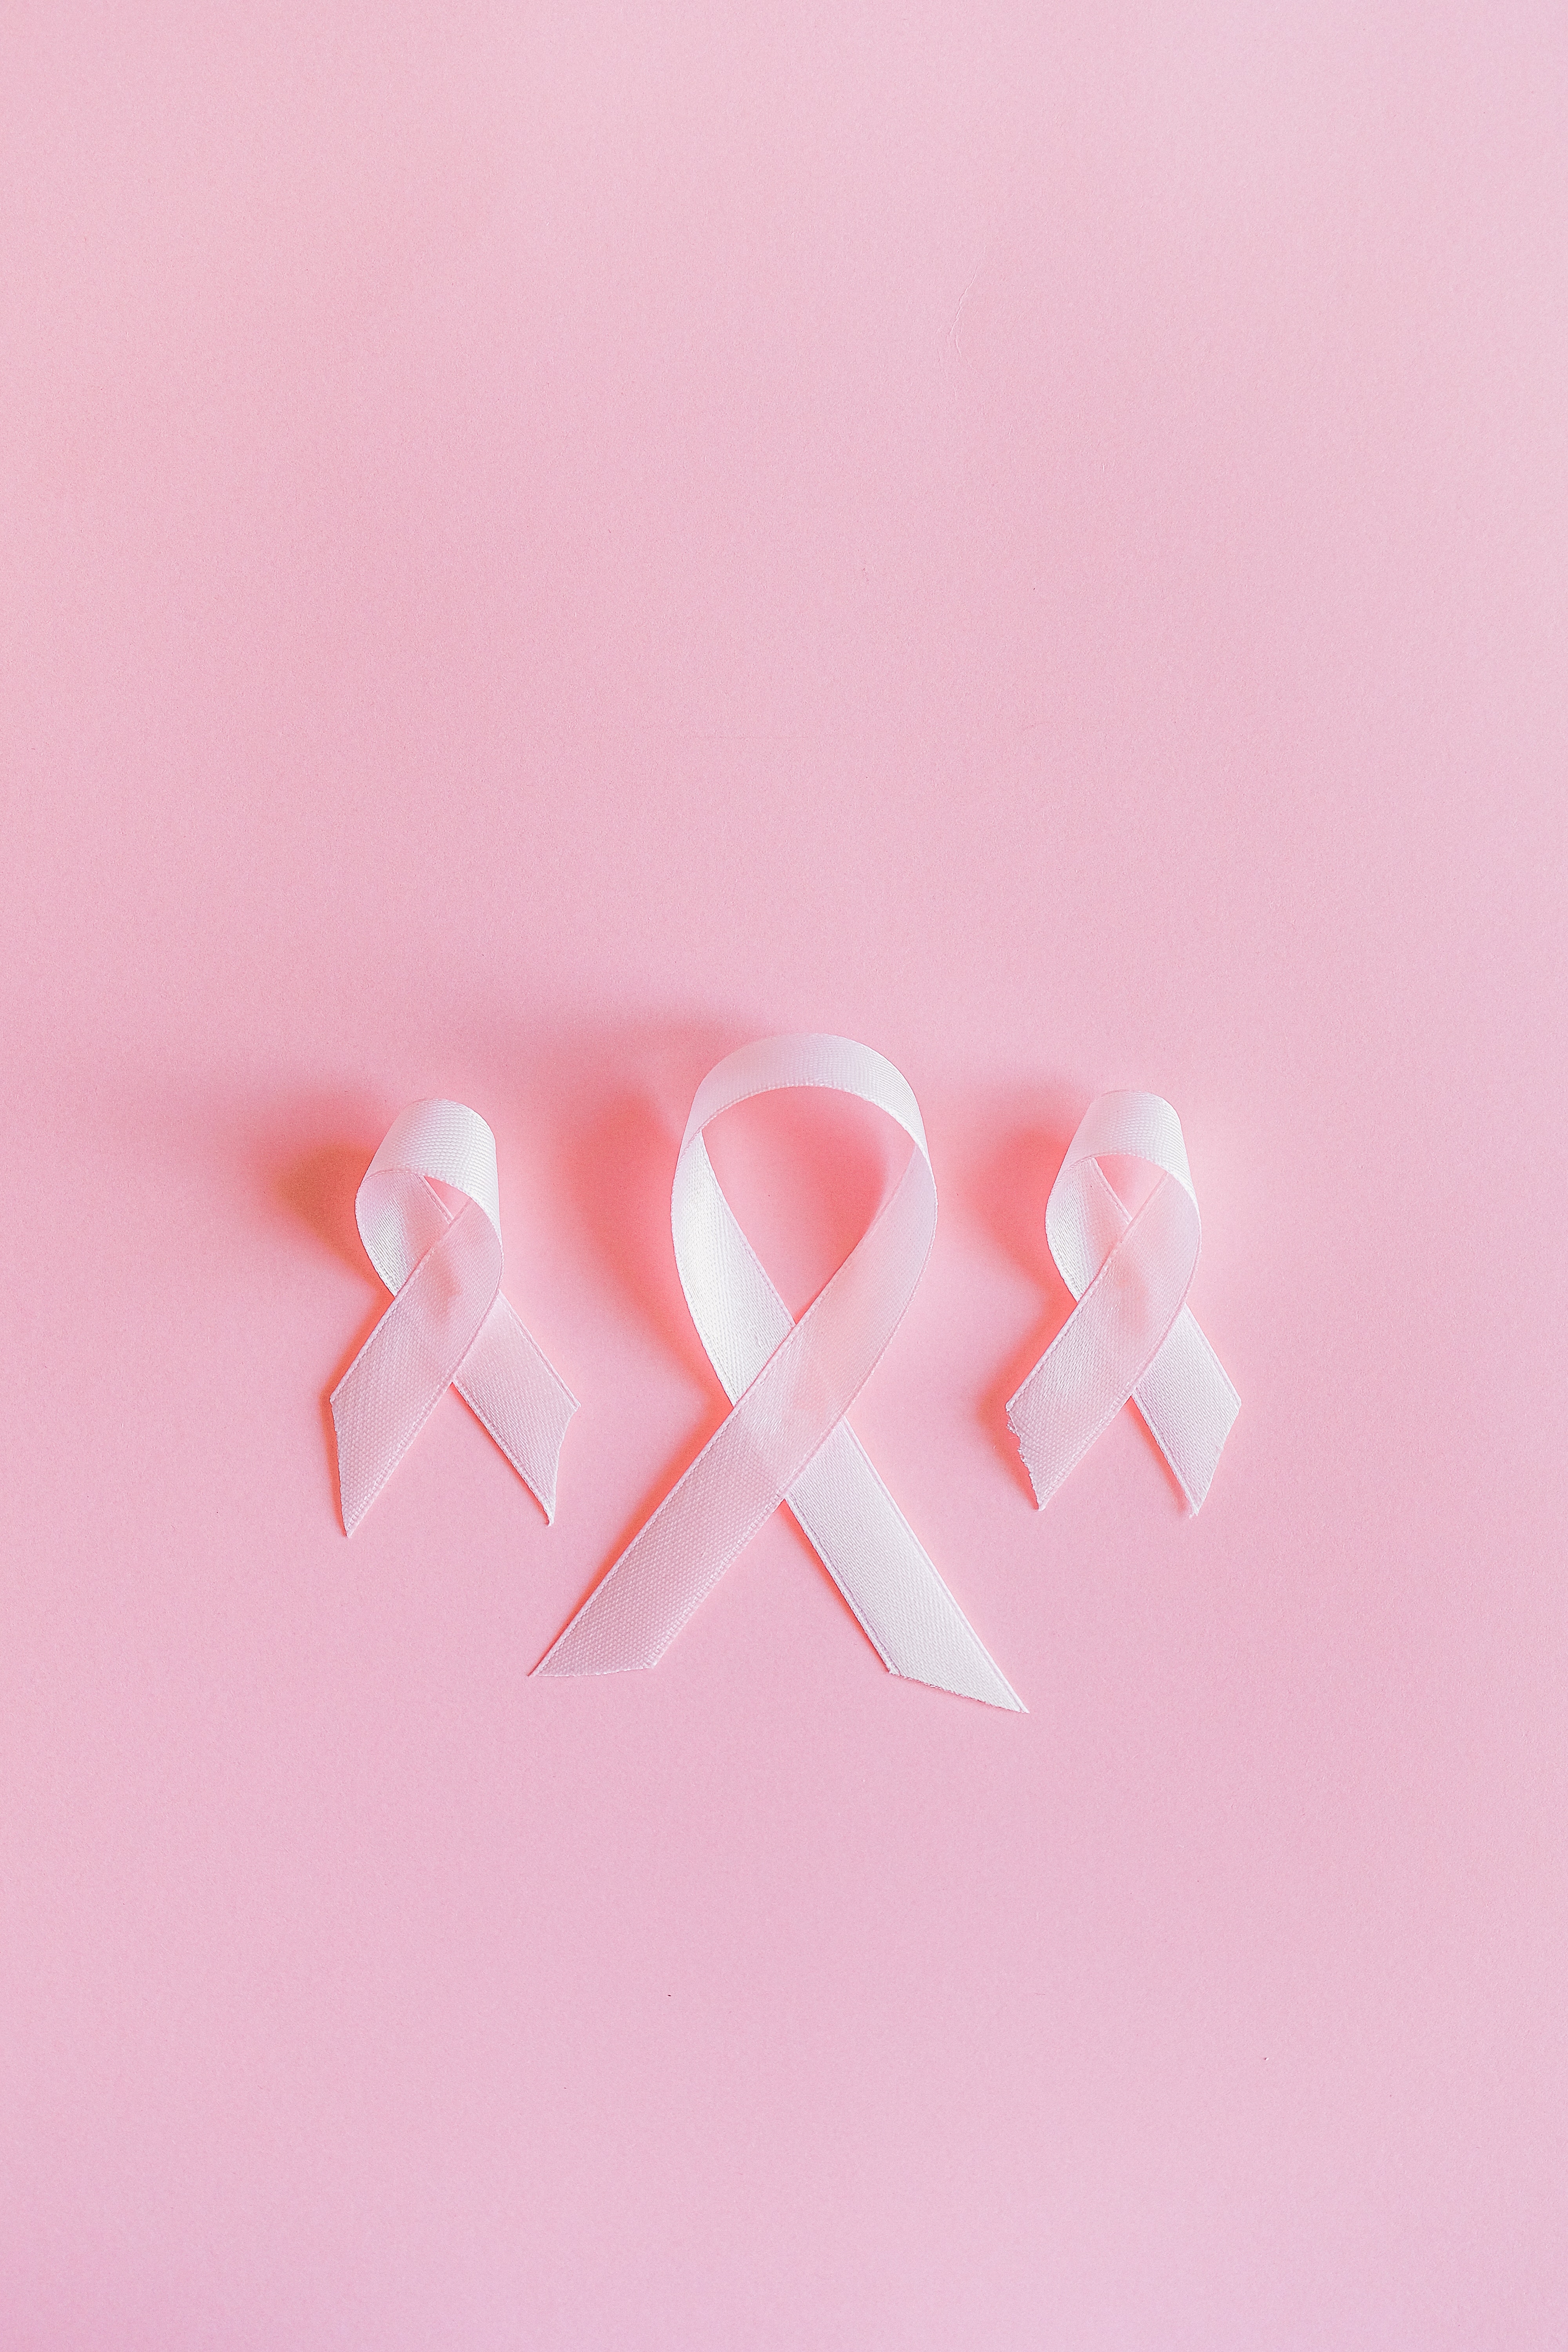 Outubro rosa – mês de alerta no combate ao câncer de mama